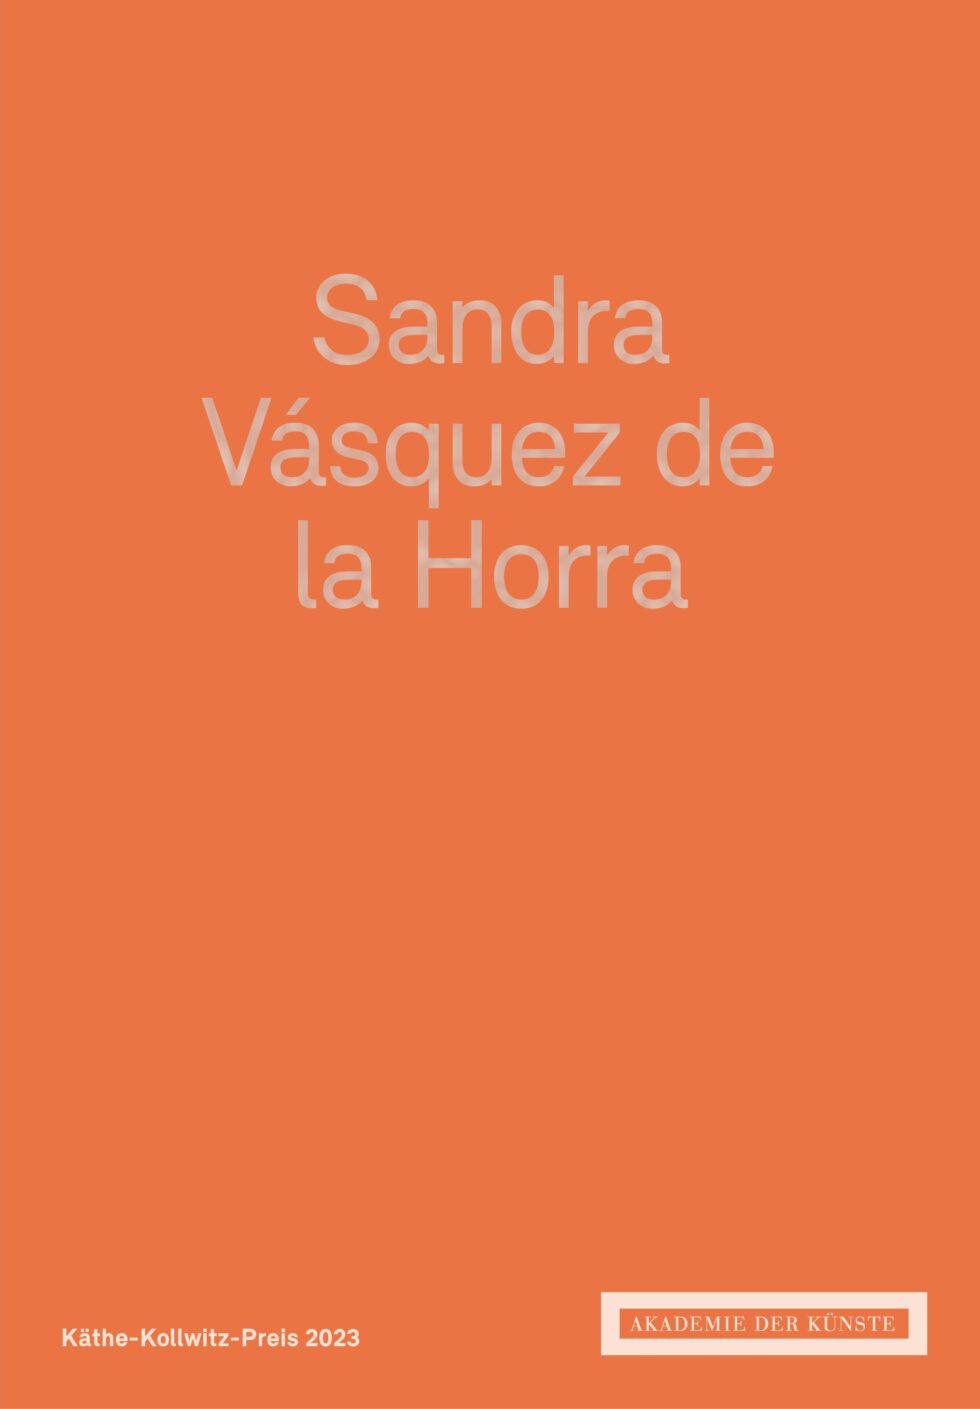 Sandra Vásquez de la Horra Käthe-Kollwitz-Preis 2023
Akademie der Künste, Berlin
ISBN 978-3-88331-259-0
deutsch/englisch, 56 pages, 27 images
